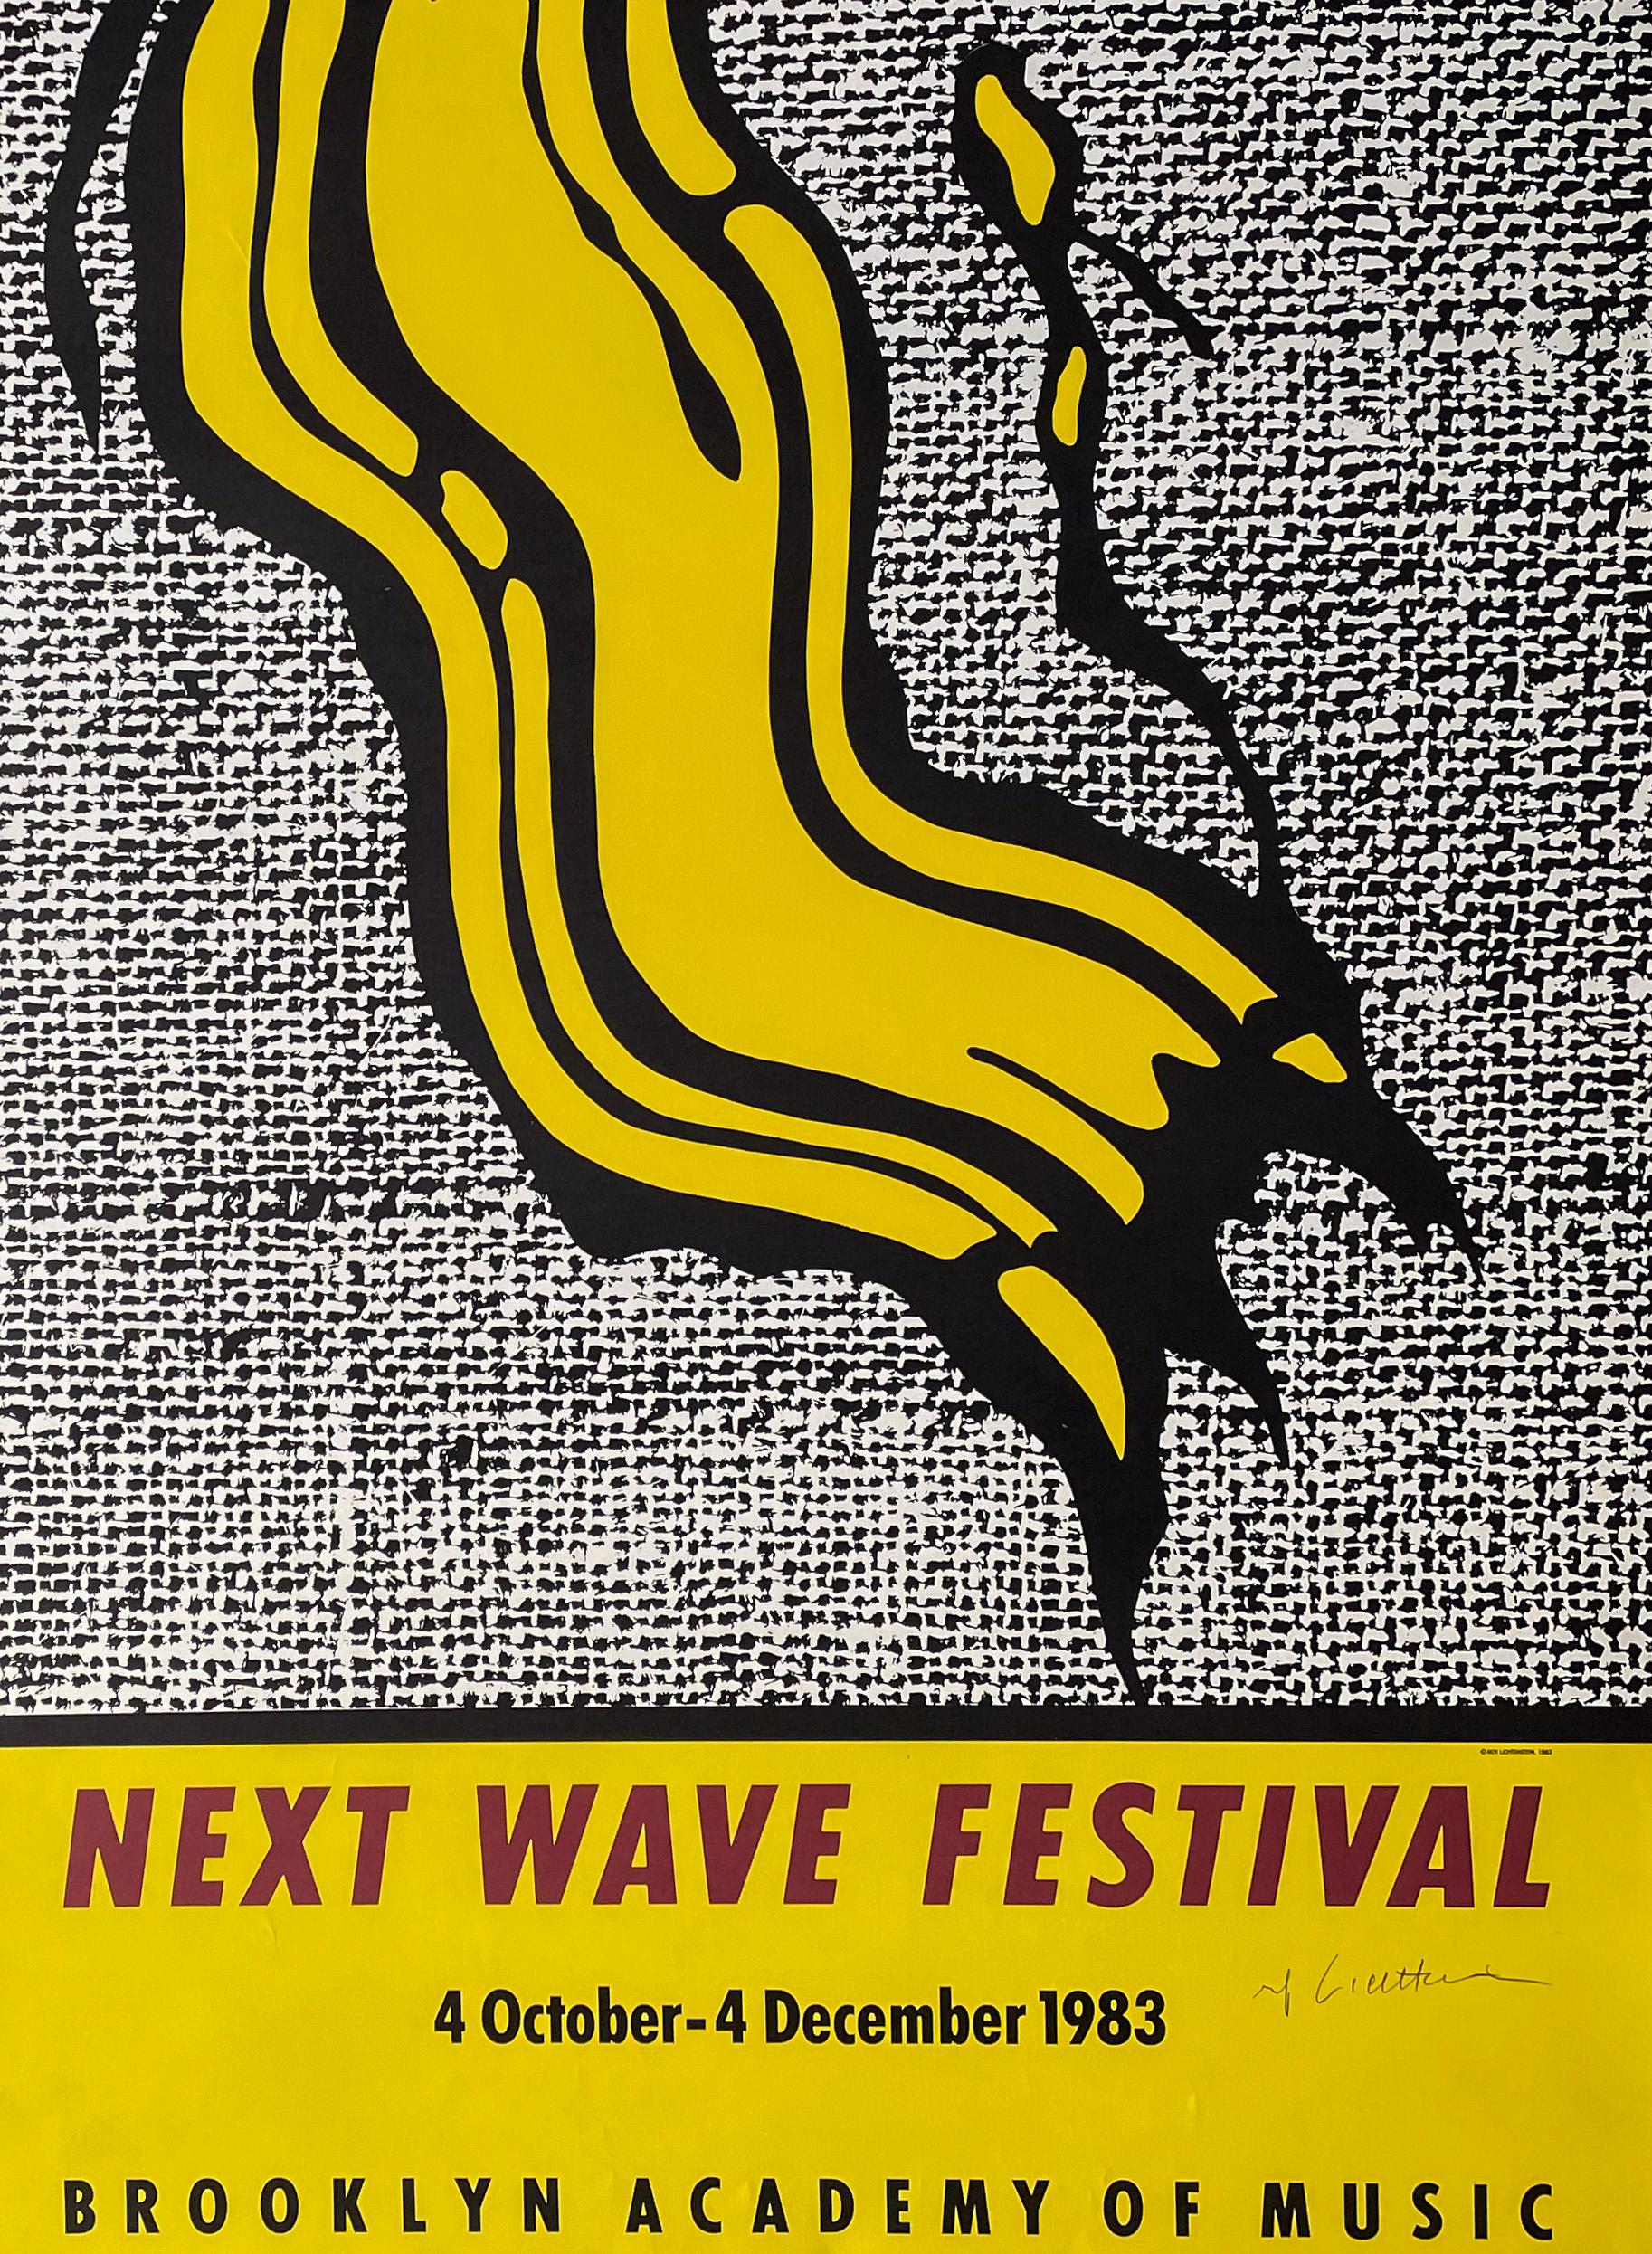 Affiche originale d'après une image de Roy Lichtenstein pour le festival inaugural (ou premier festival officiel) Next Wave qui s'est tenu à la Brooklyn Academy of Music du 4 octobre au 4 décembre 1983, publiée en 1983 par le Next Wave Producers